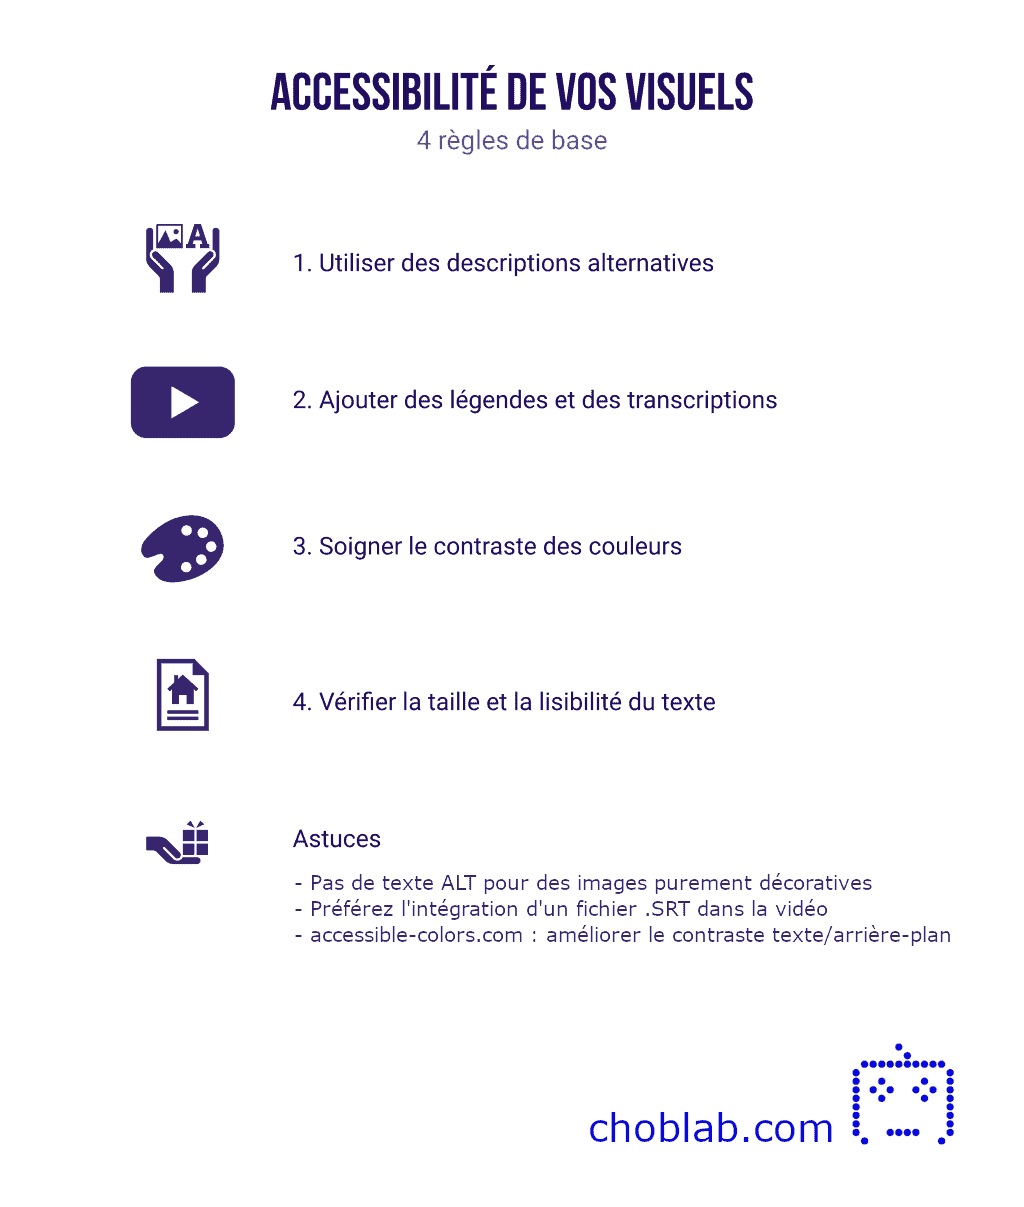 Résumé des 4 règles de base de l'accessibilité des visuels